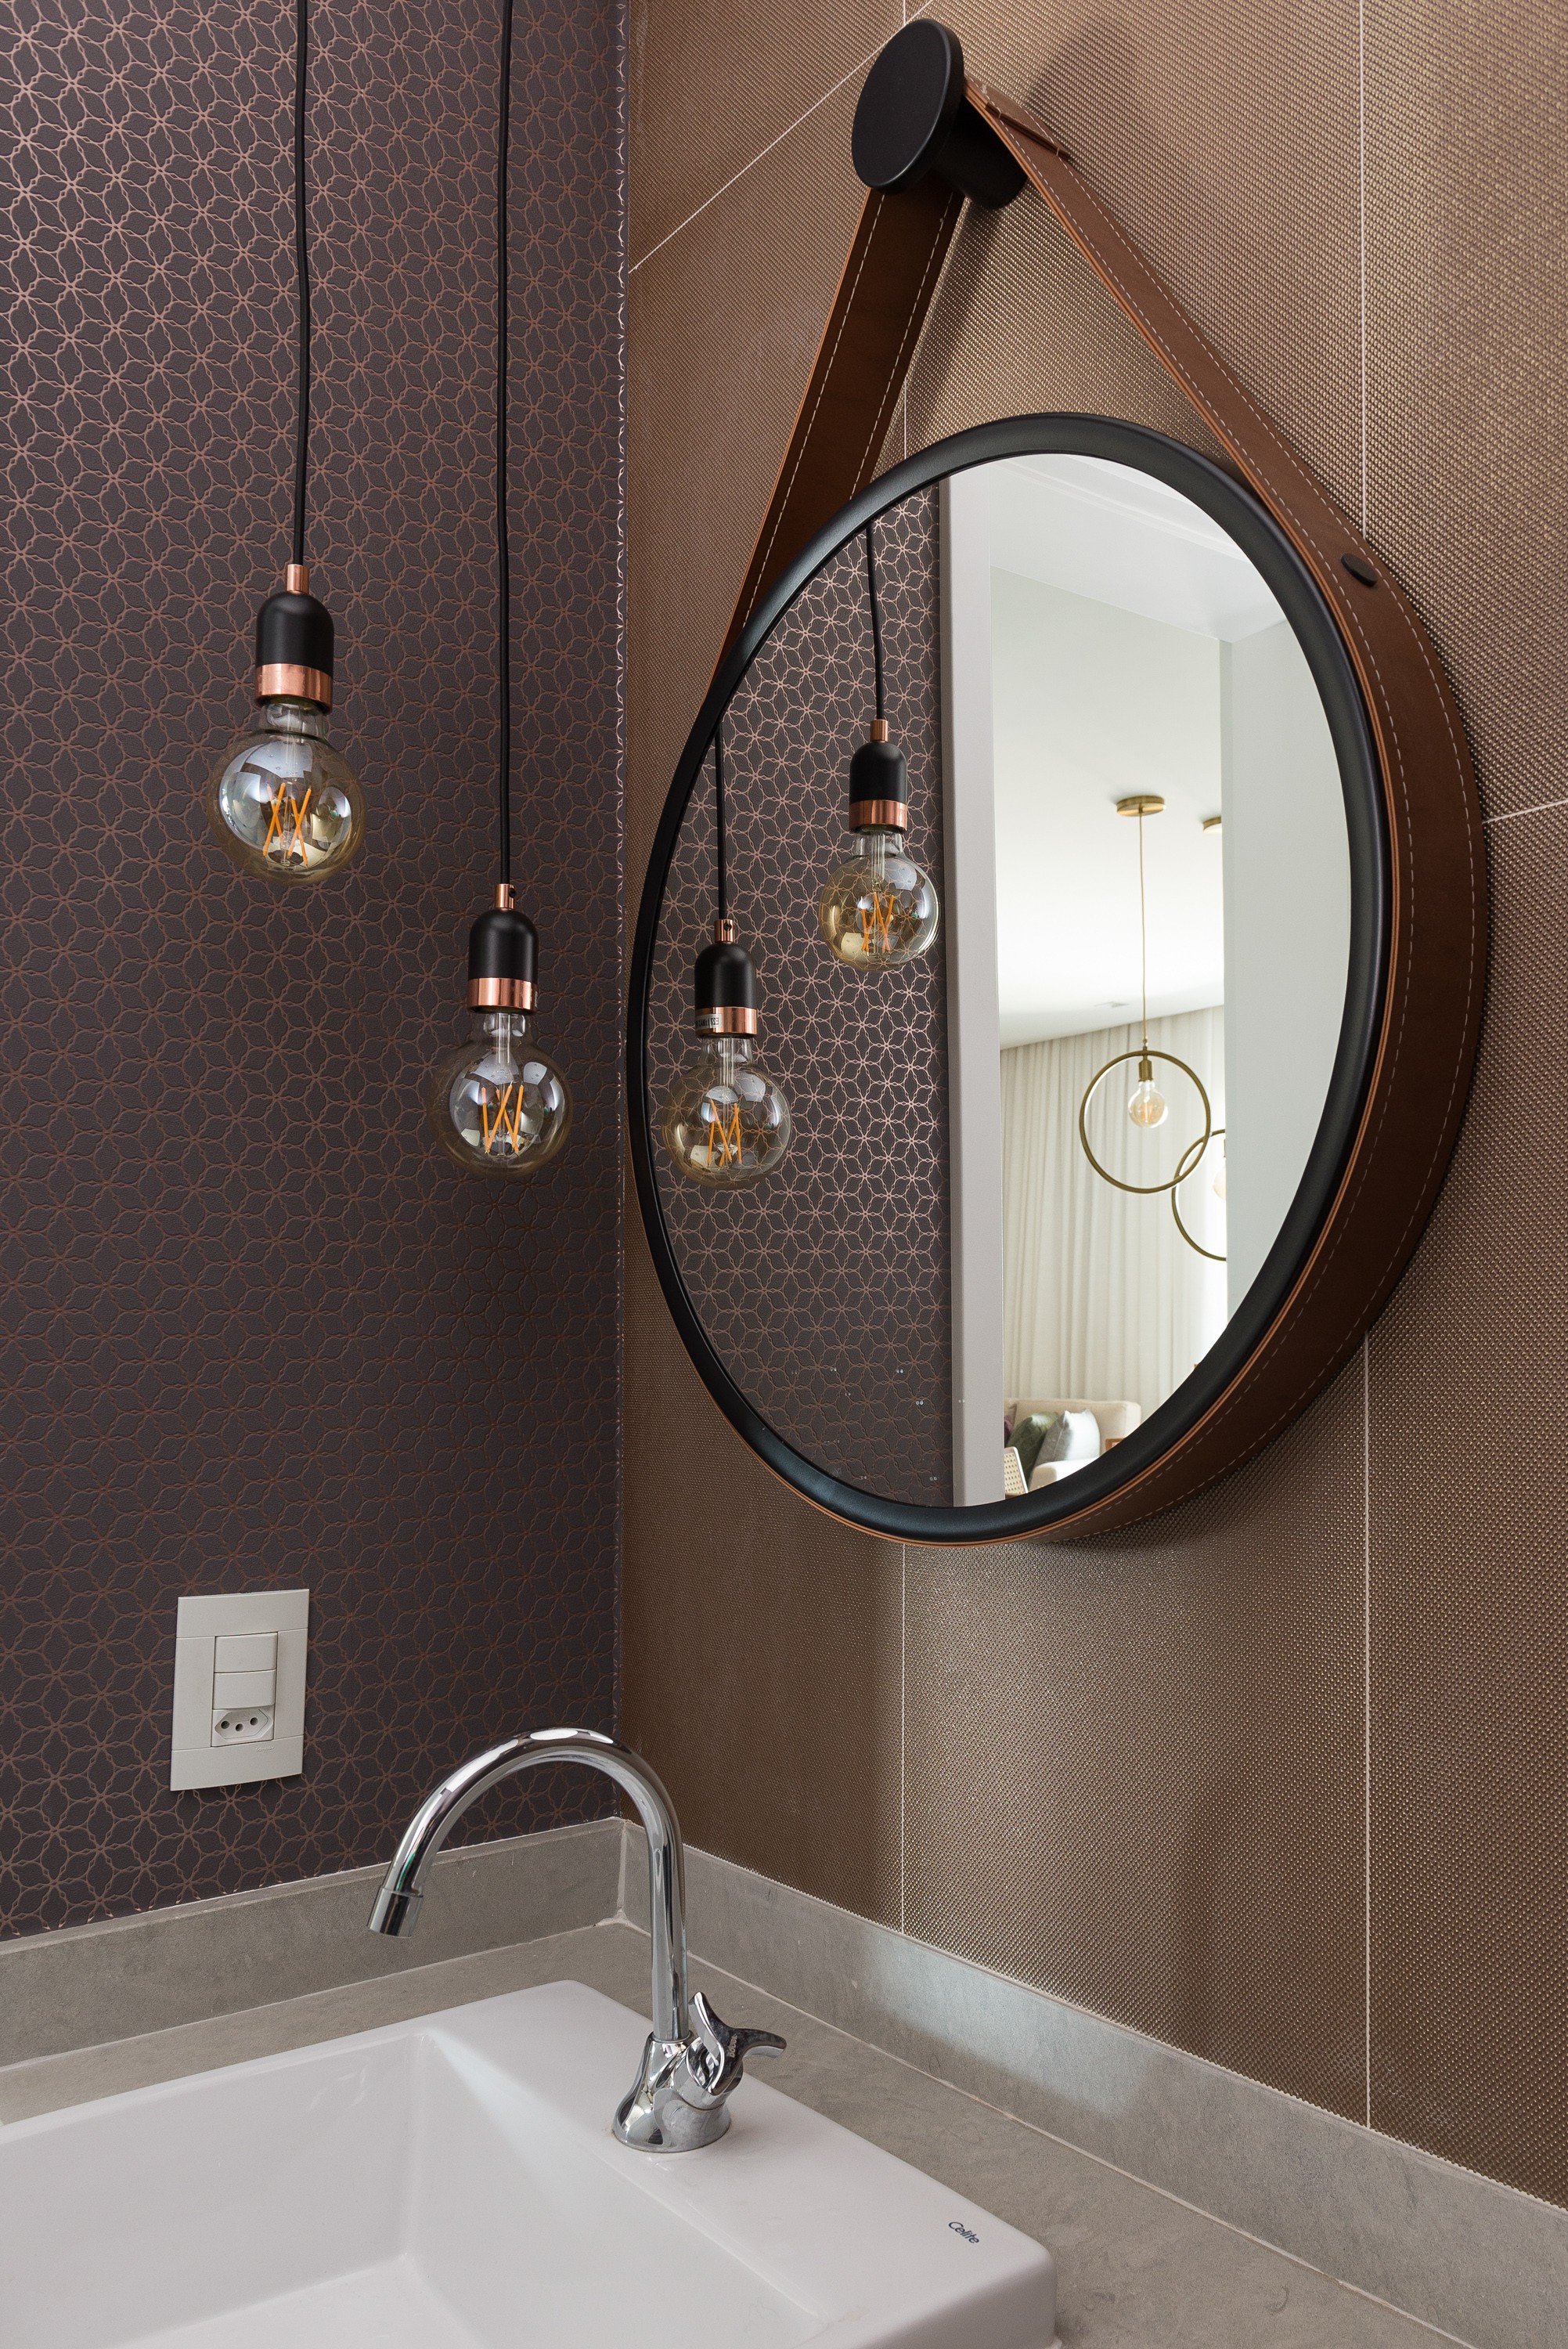 Espelho Adnet: 10 ideias para usar a peça na decoração (Foto: Divulgação)